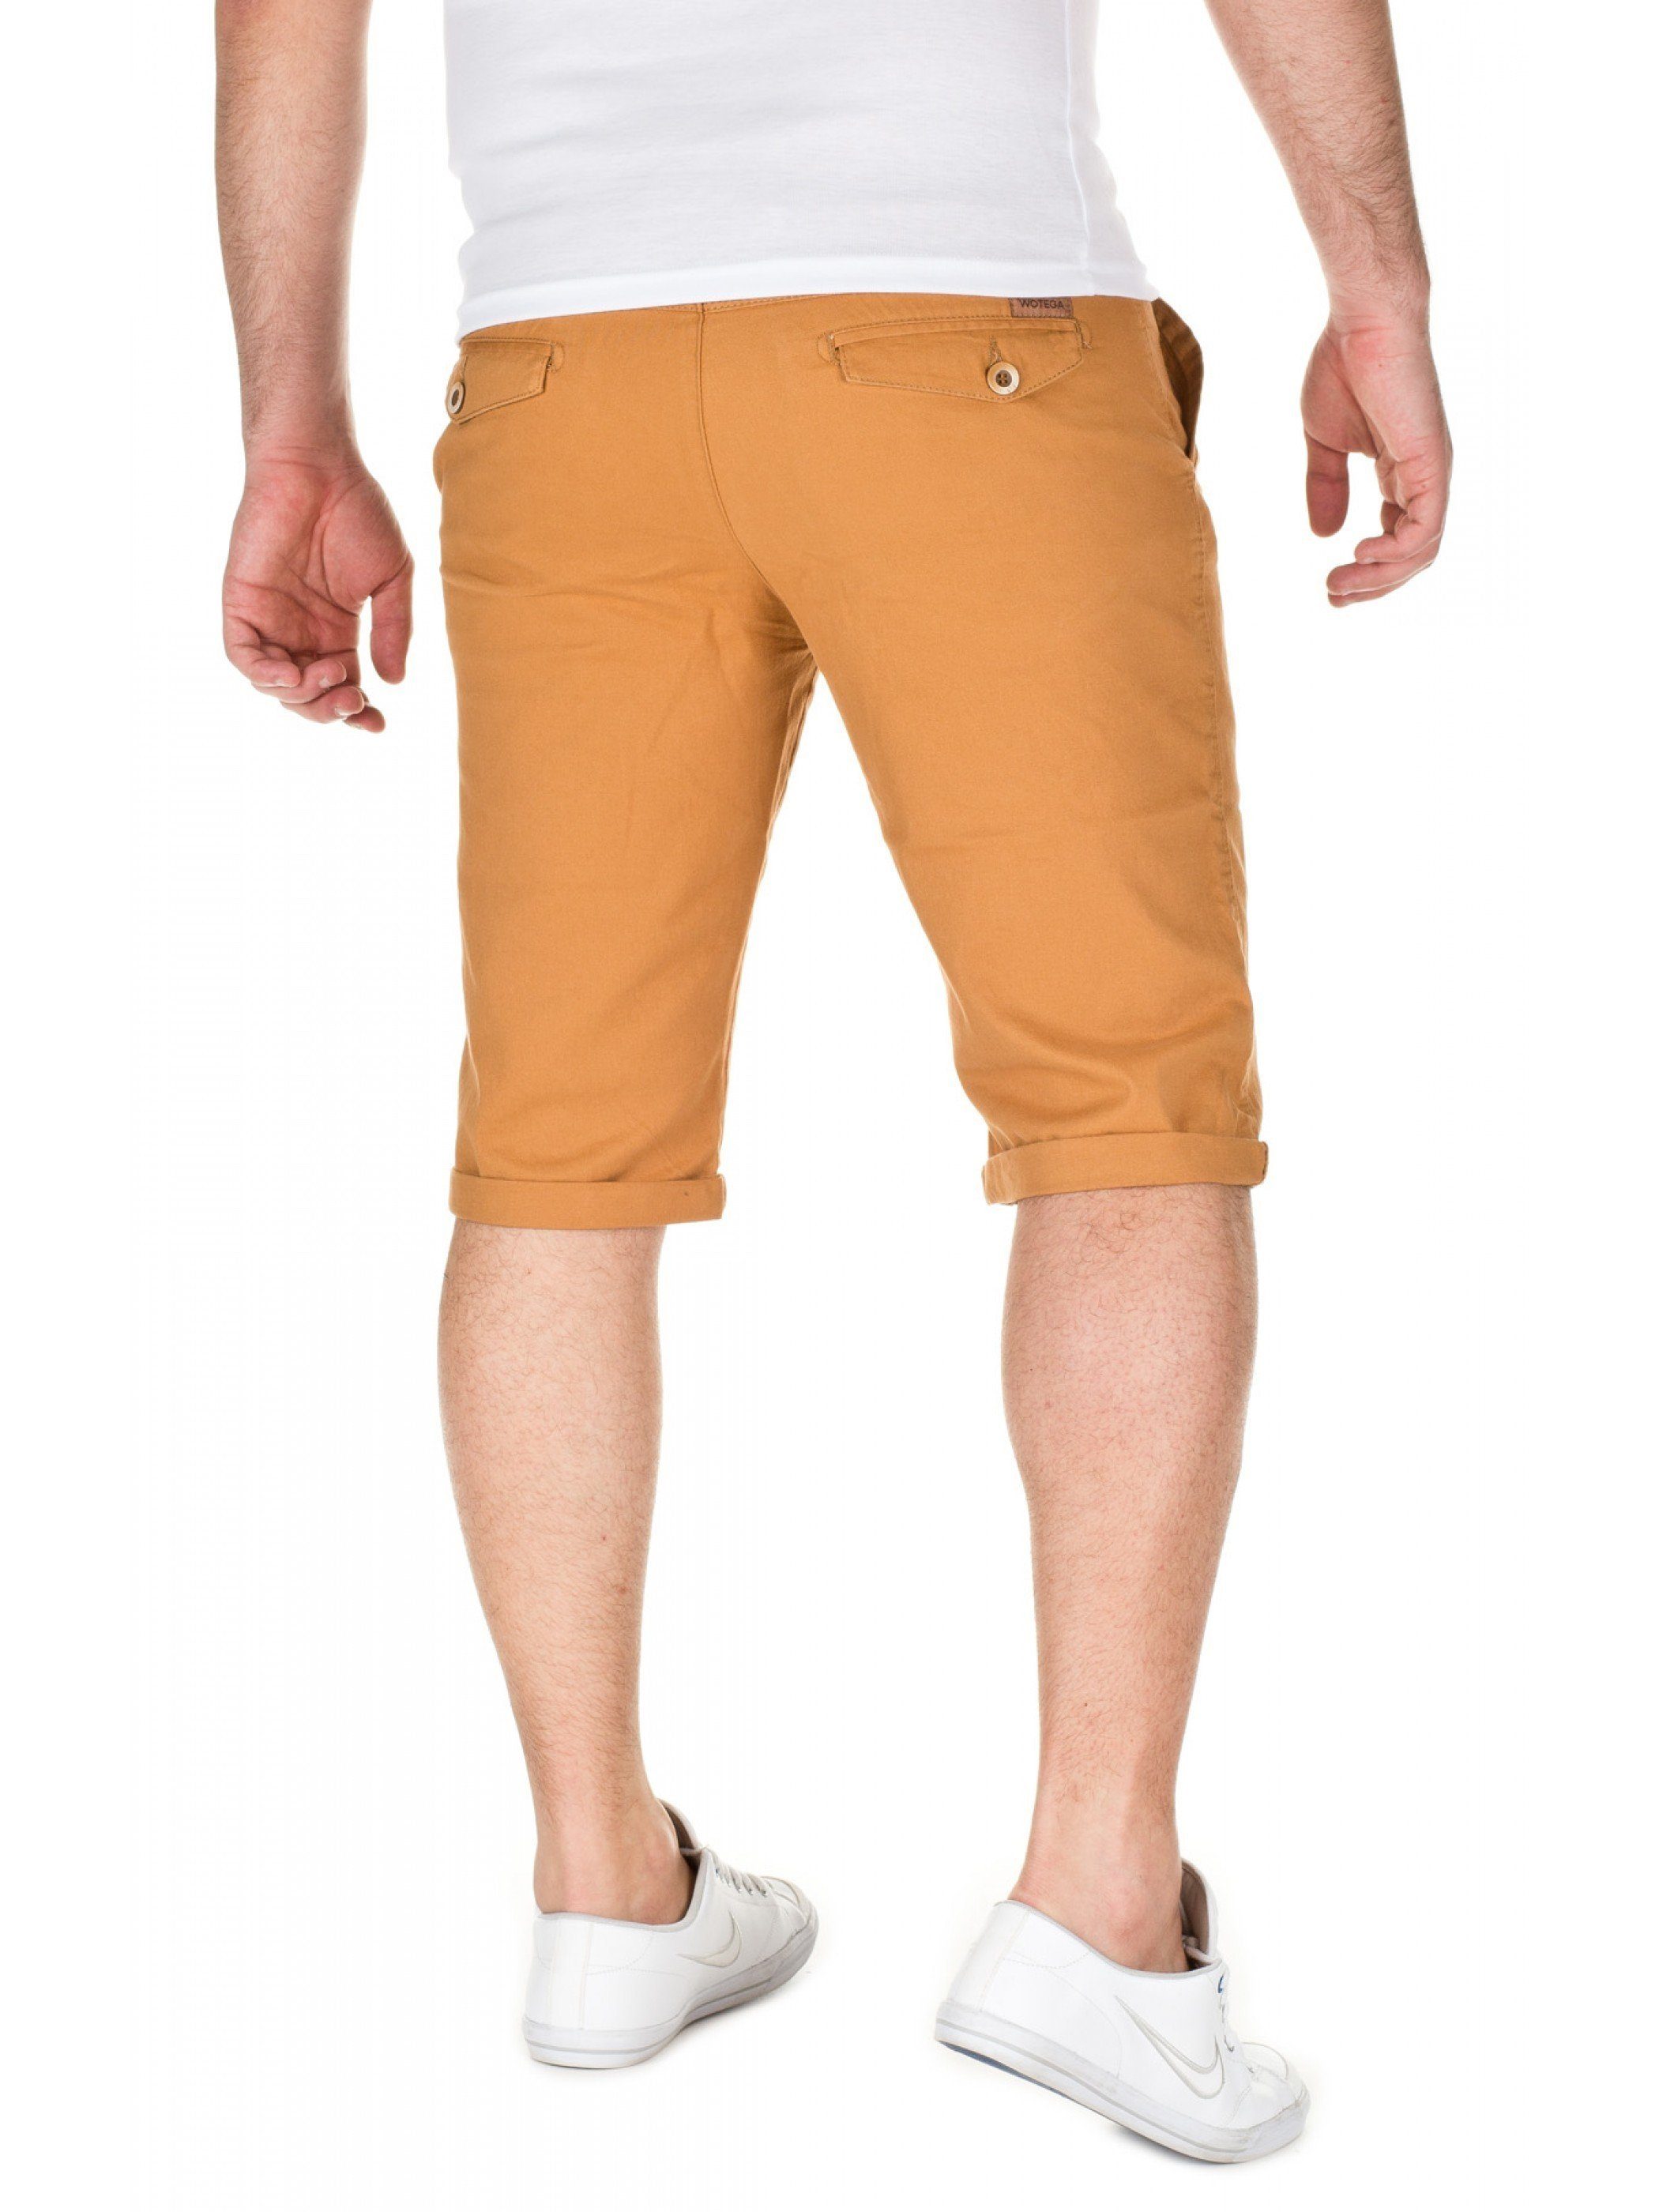 WOTEGA in shorts Goldfarben (mustard Shorts gold Unifarbe Alex Chino - WOTEGA 82295)